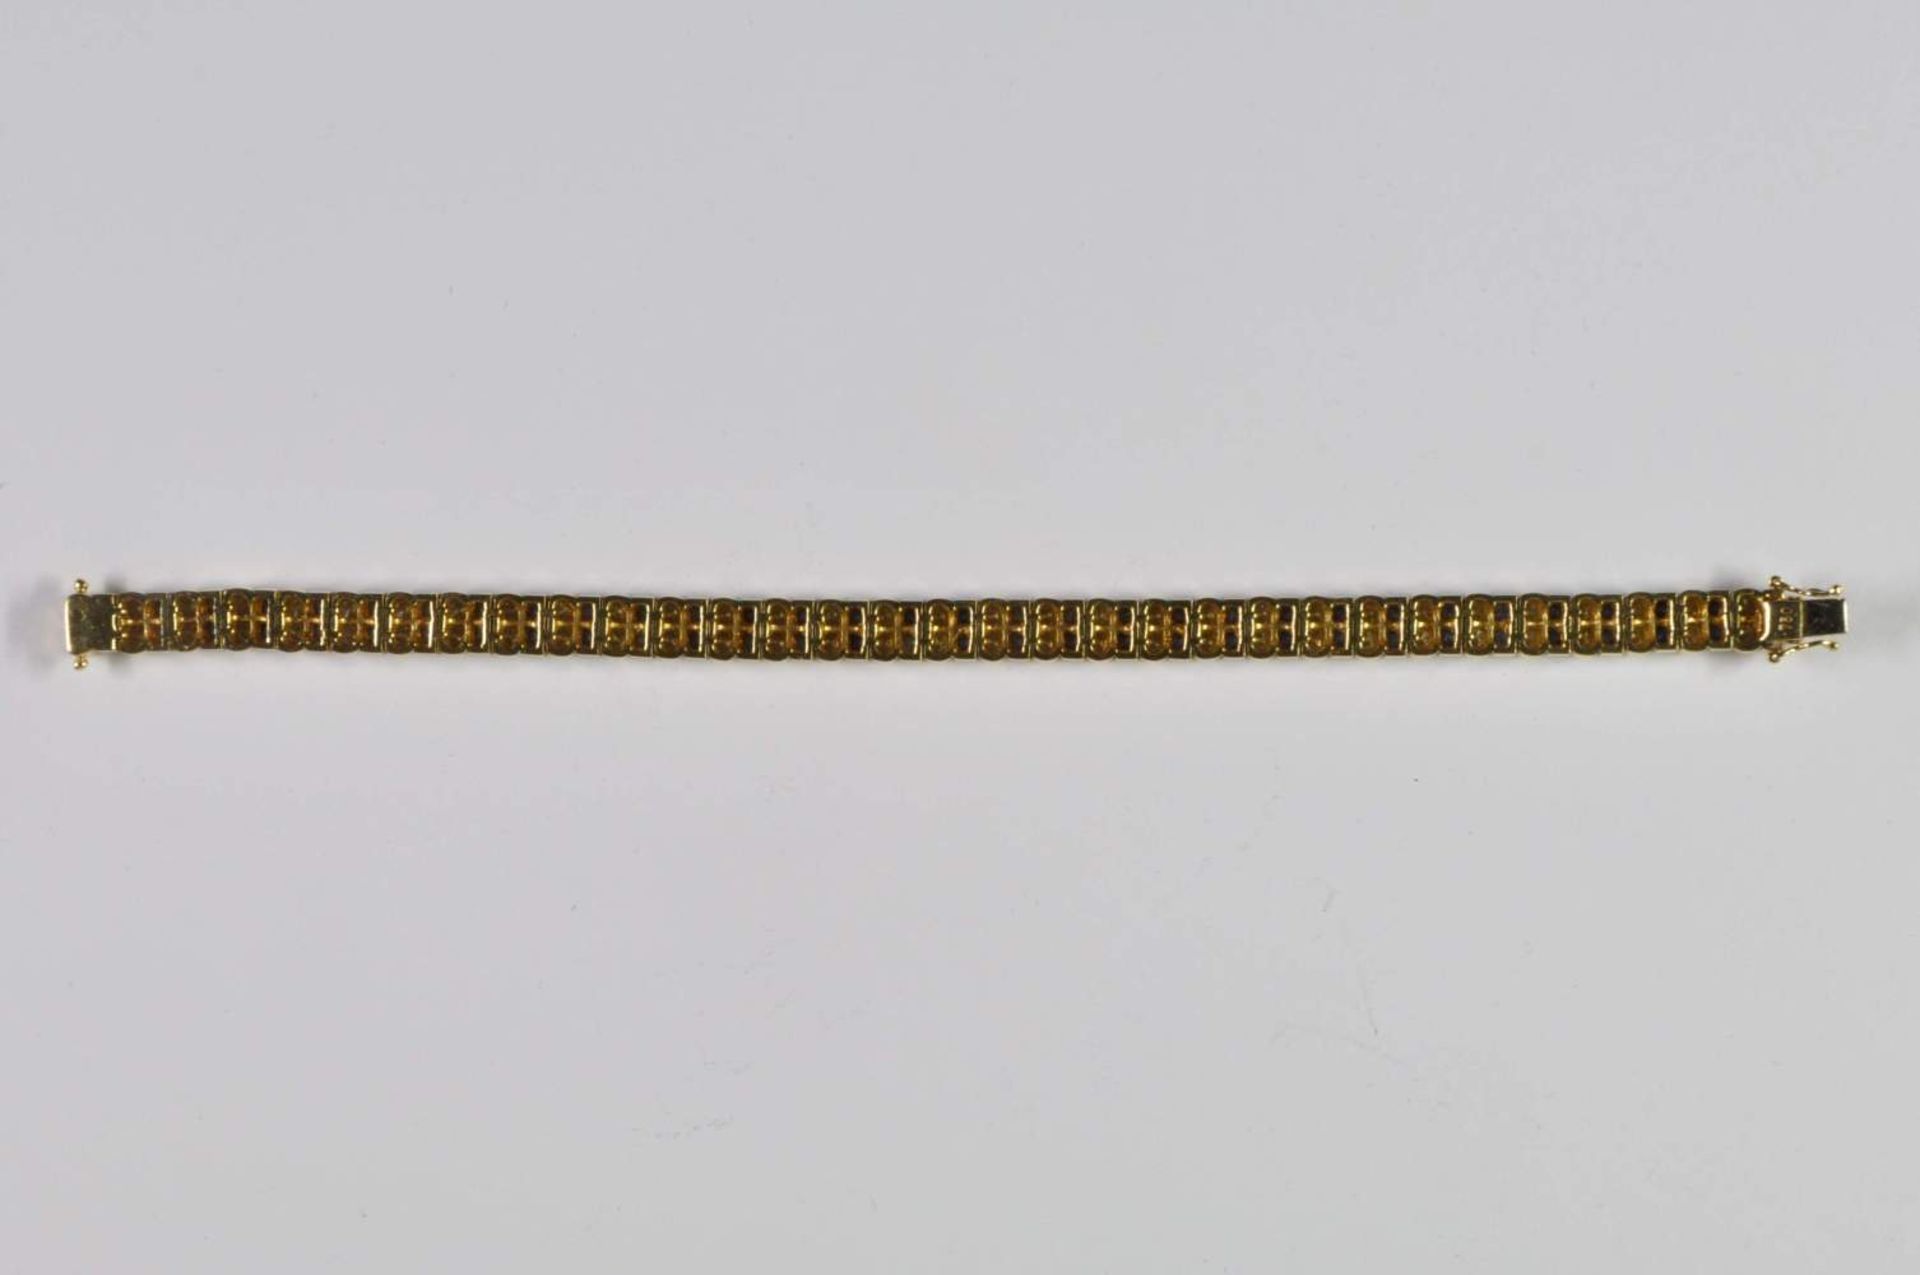 Saphir-Brillant-Armband, 750 Gelbgold, Punze, 66 Brillanten von zus. ca. 3,2ct, 64 Saphiren von zus. - Bild 8 aus 20